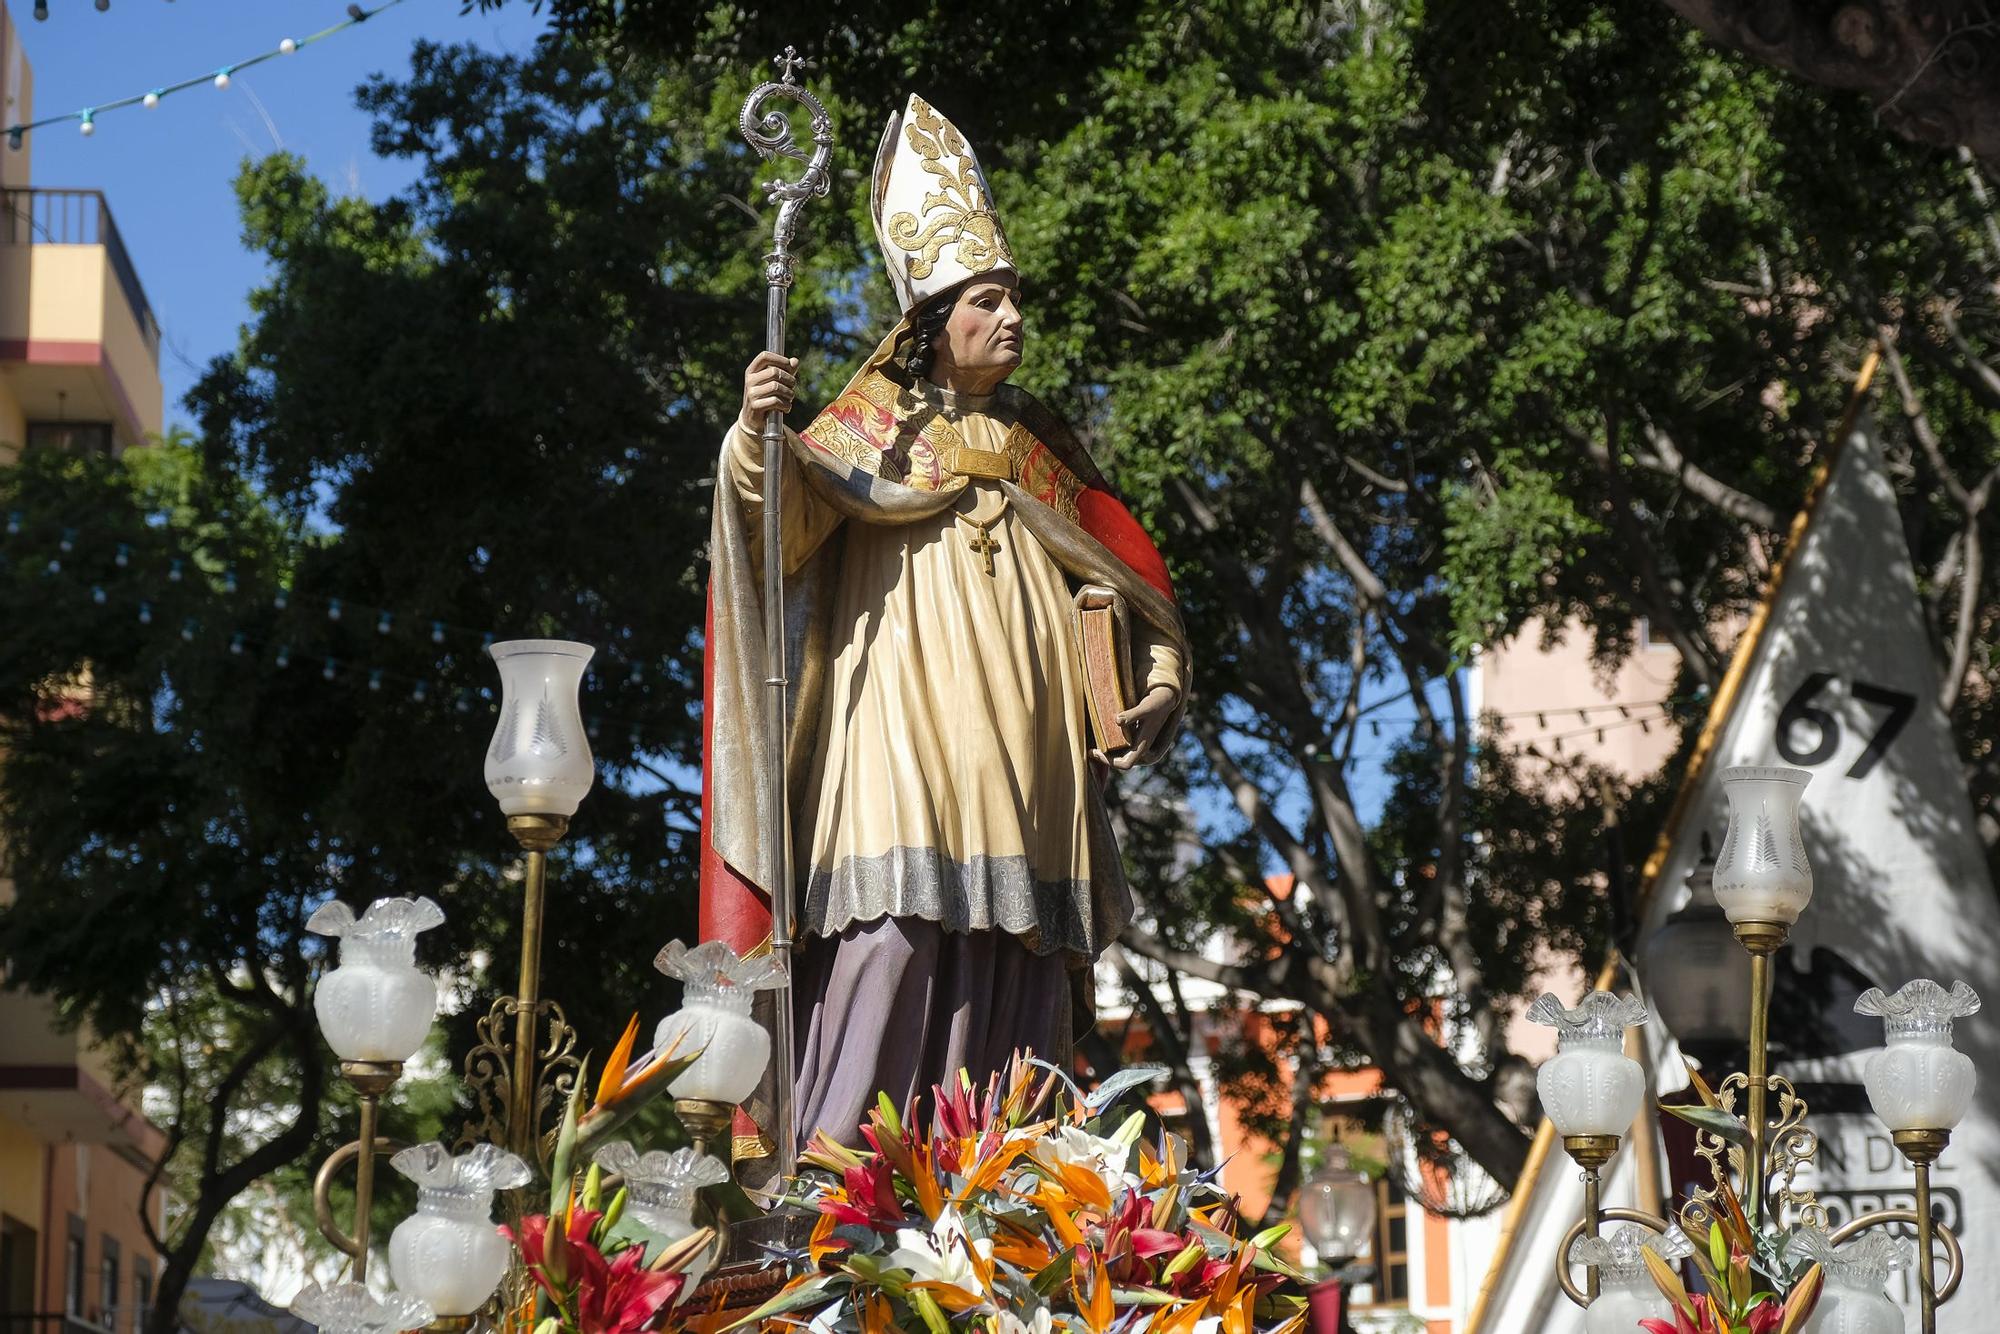 Día grande de las fiestas de San Gregorio en Telde